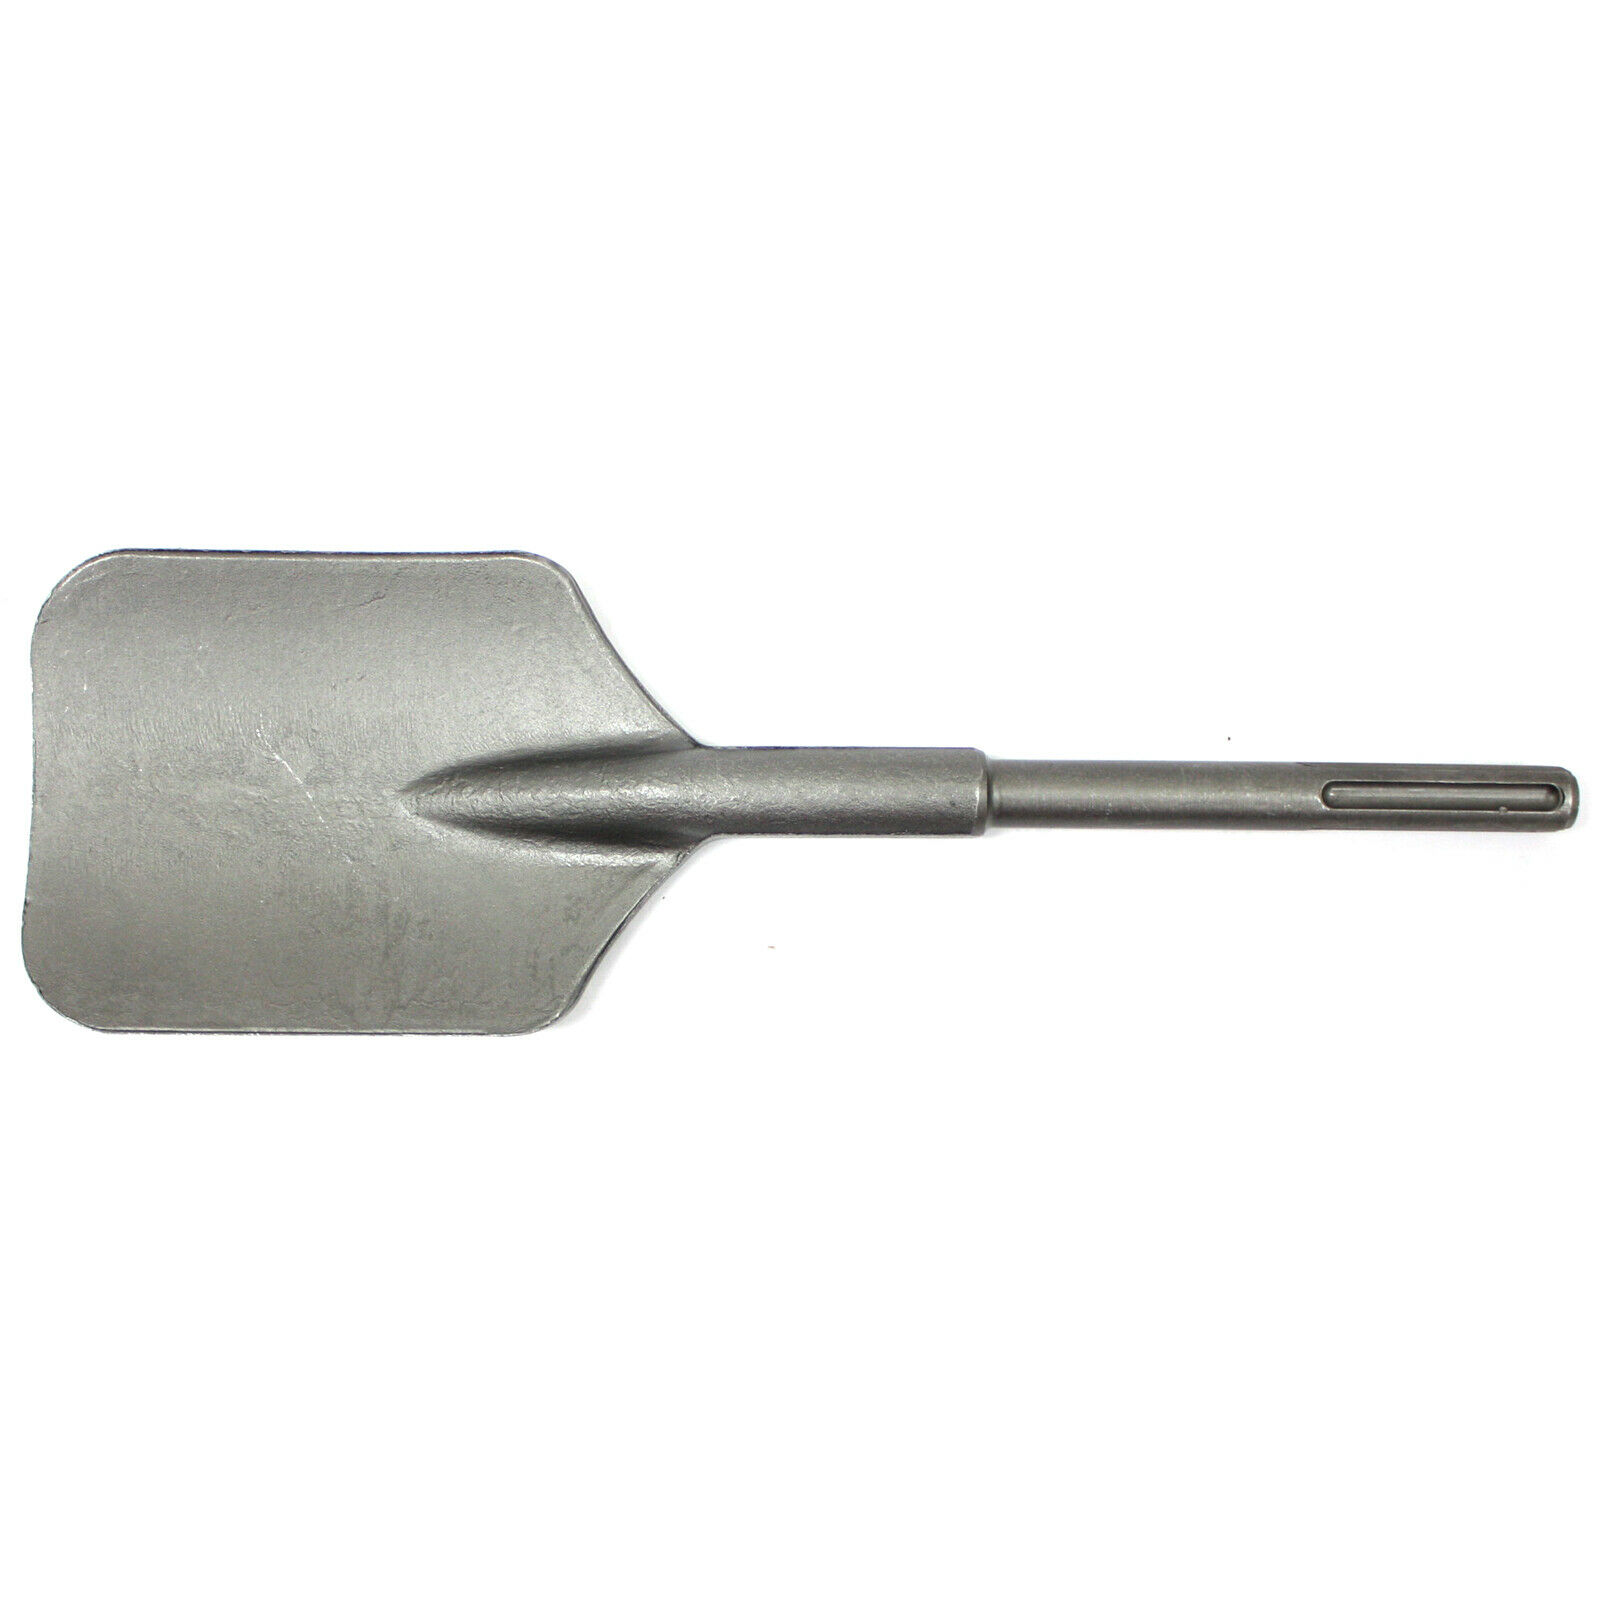 Square Shovel Chisel For Spline Shank Rotary Hammer Drill Demo Bit Jack 